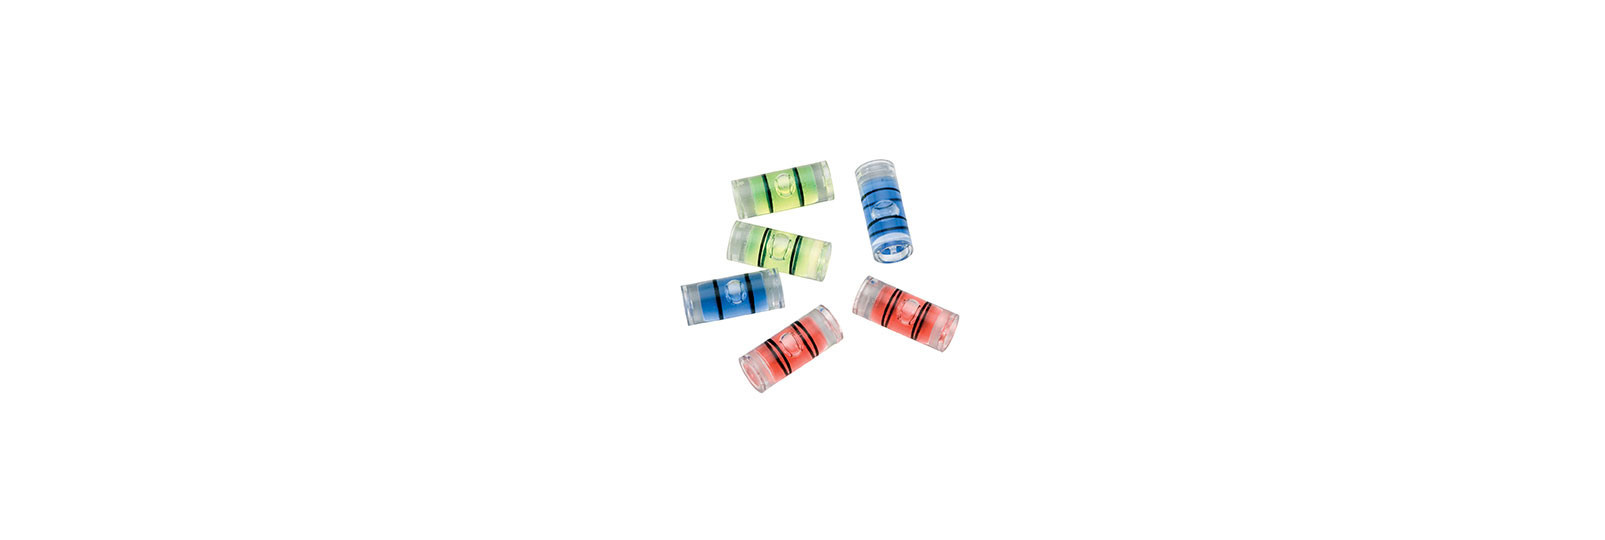 Six colored glass bubbles (Spirit level) set